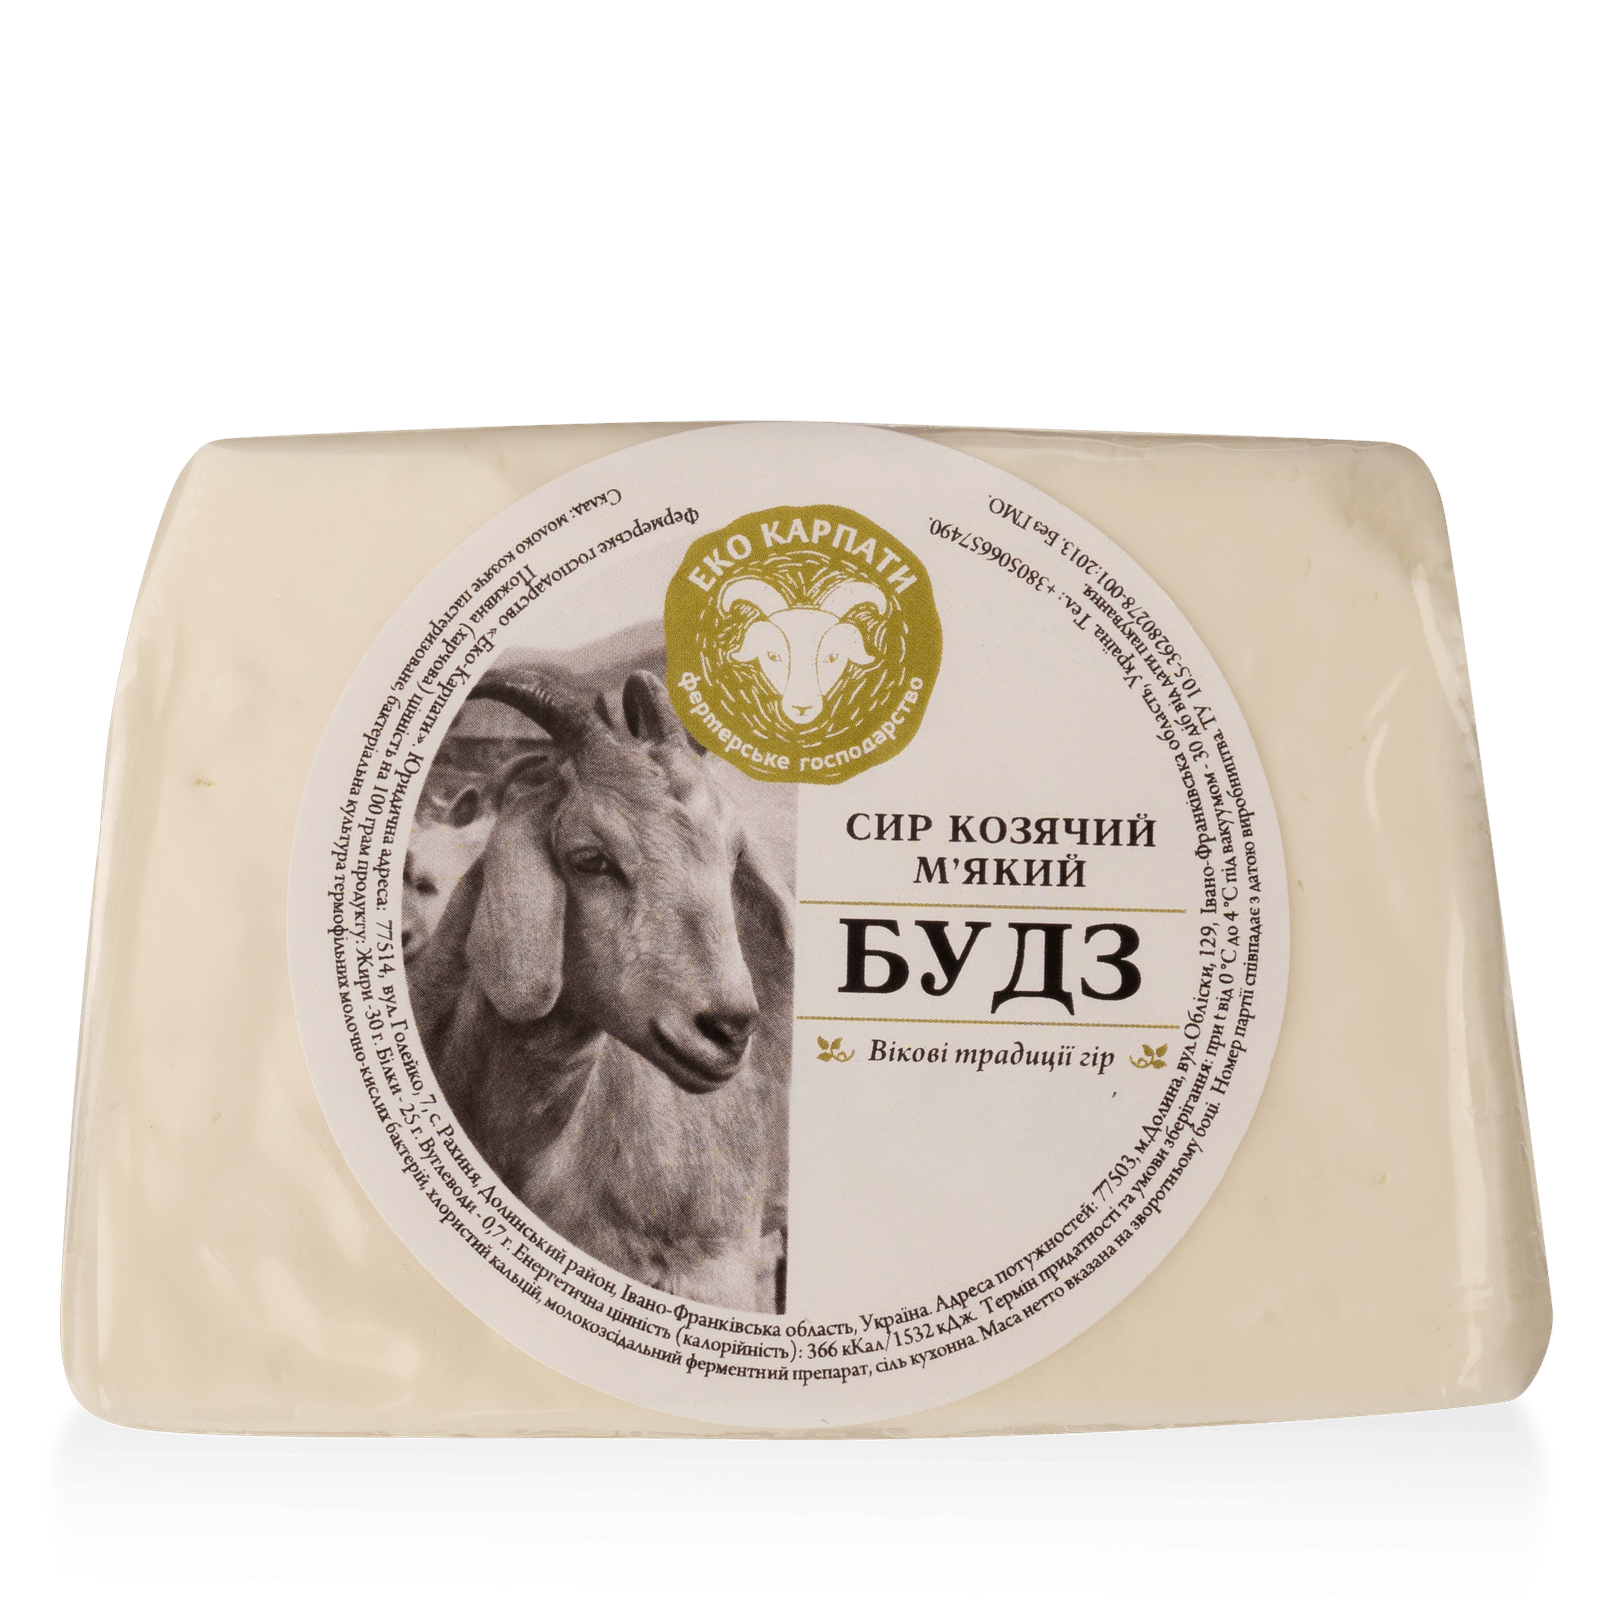 Сир «Лавка традицій» «Еко Карпати» будз 30% з козячого молока - 1